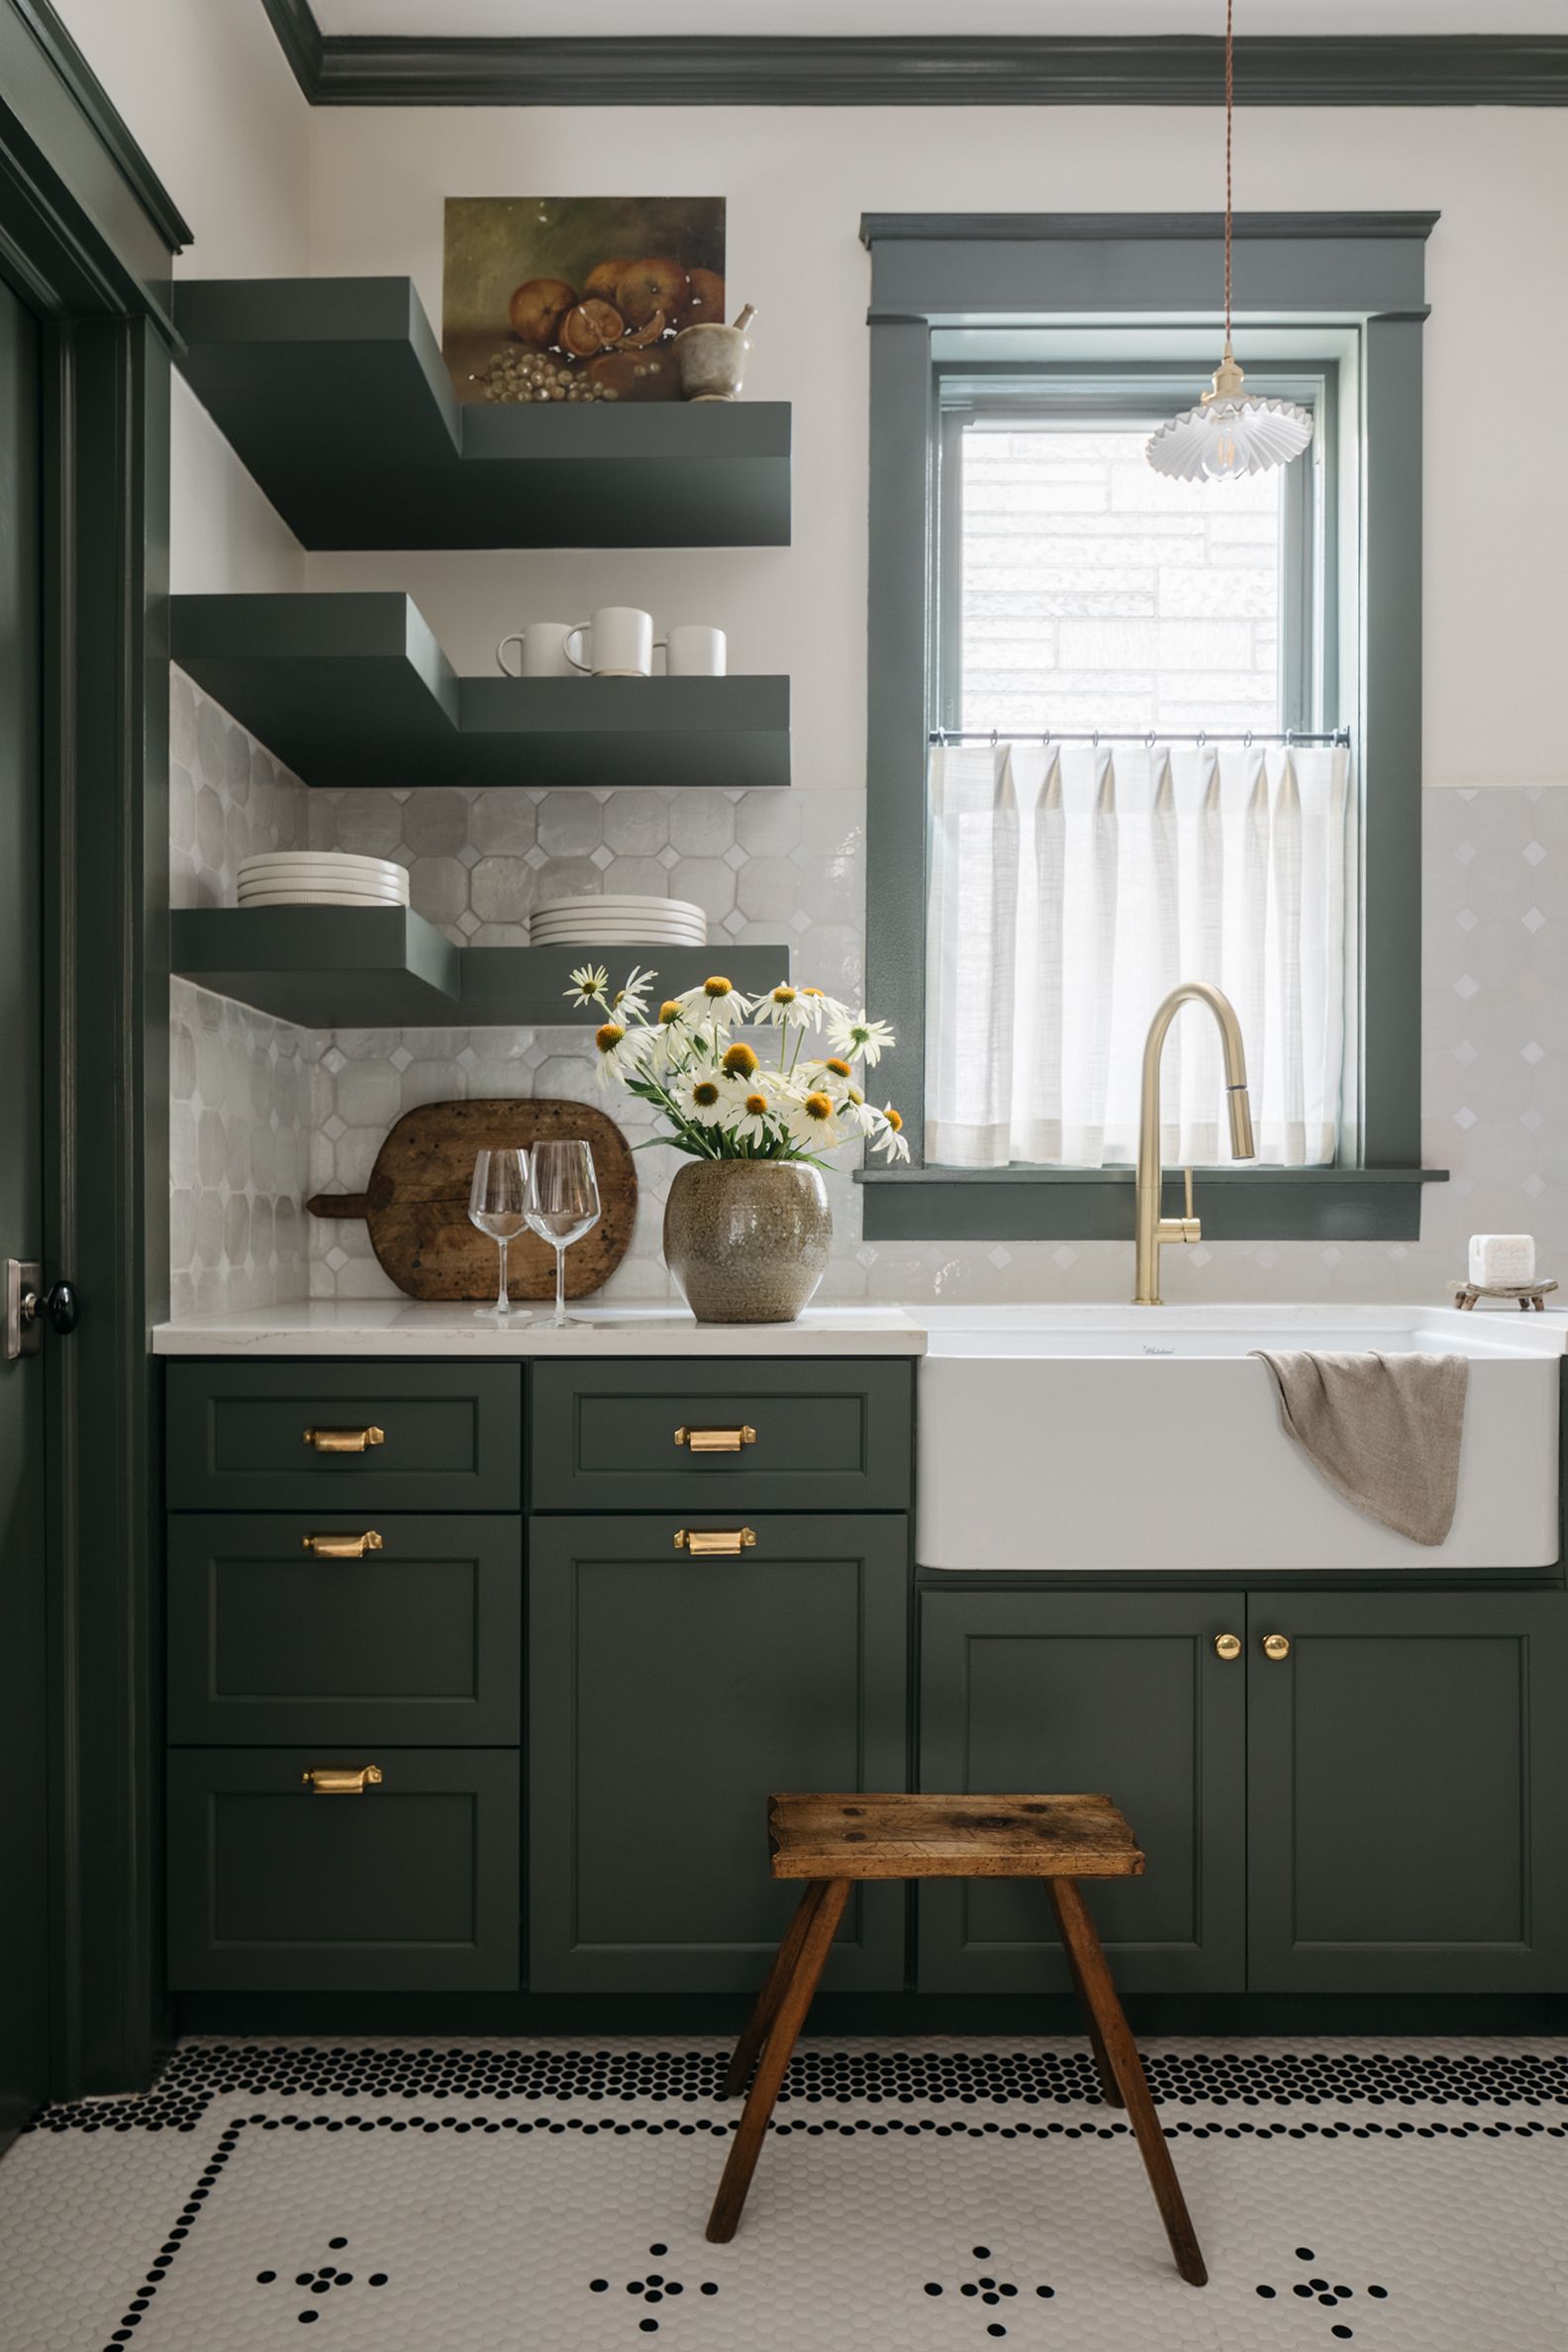 Emerald Green Kitchen Cabinets Design Ideas